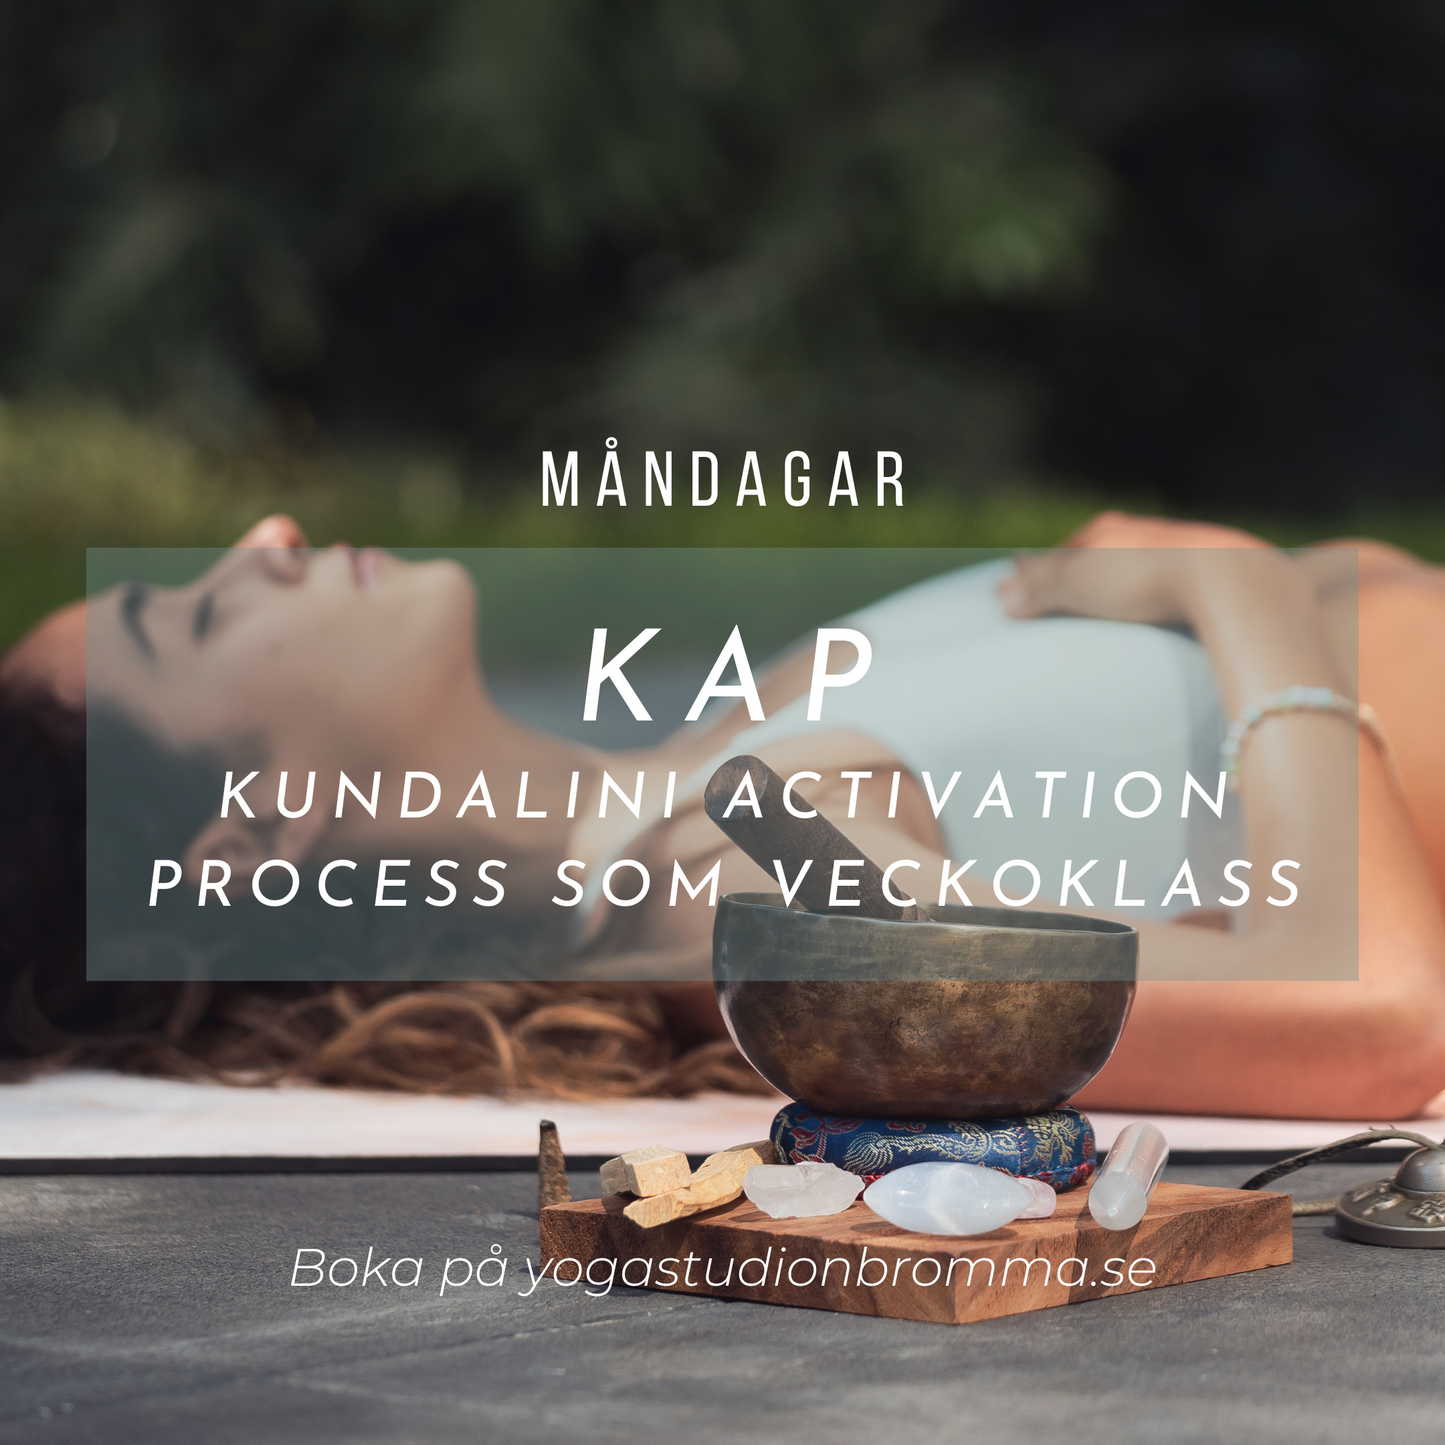 KAP (Kundalini Activation Process) - Måndagar, Kvällsklass